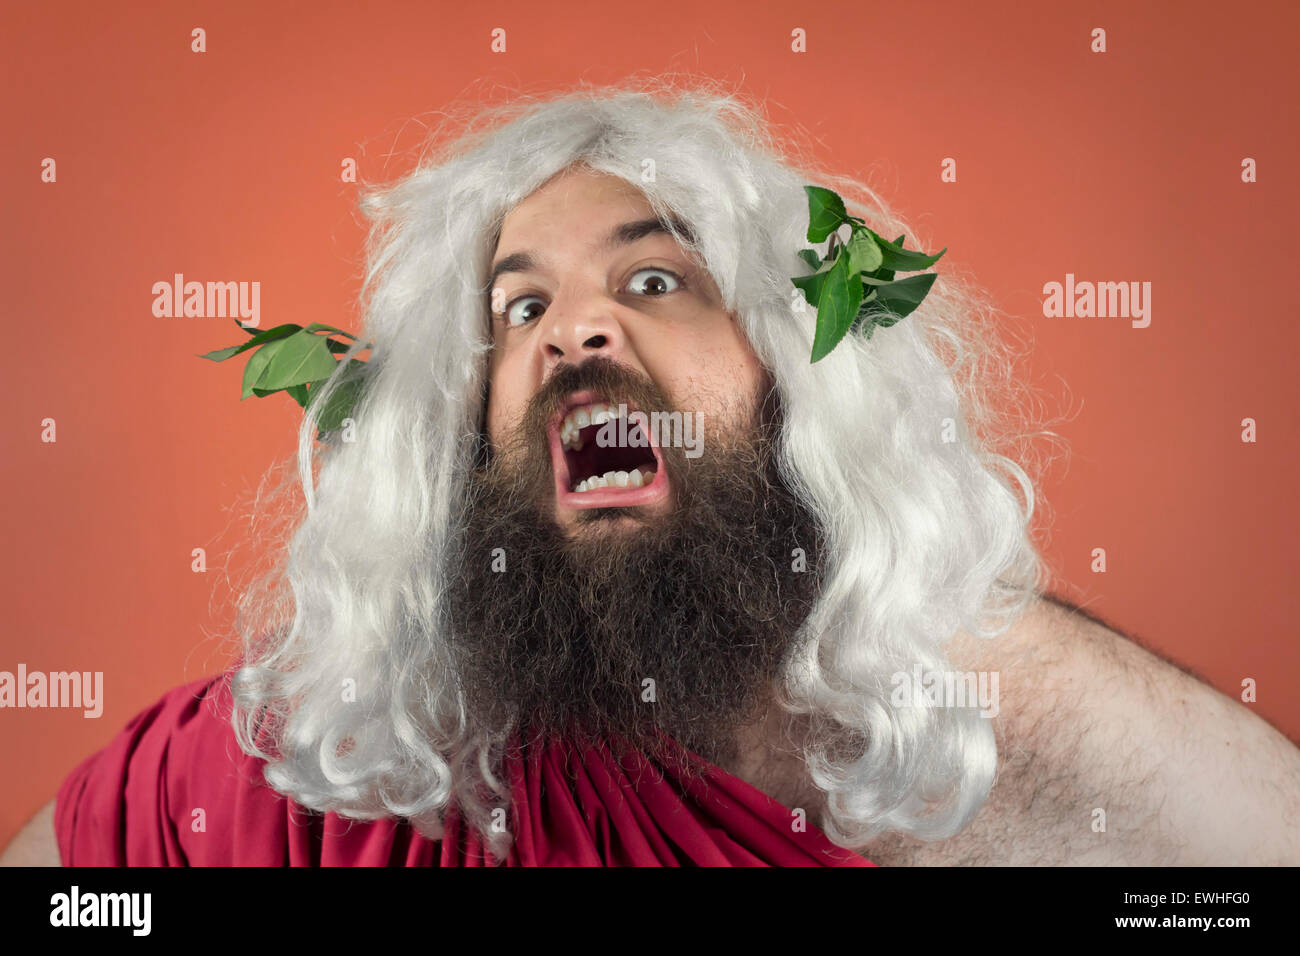 Angry yelling wrath of god against orange background Stock Photo